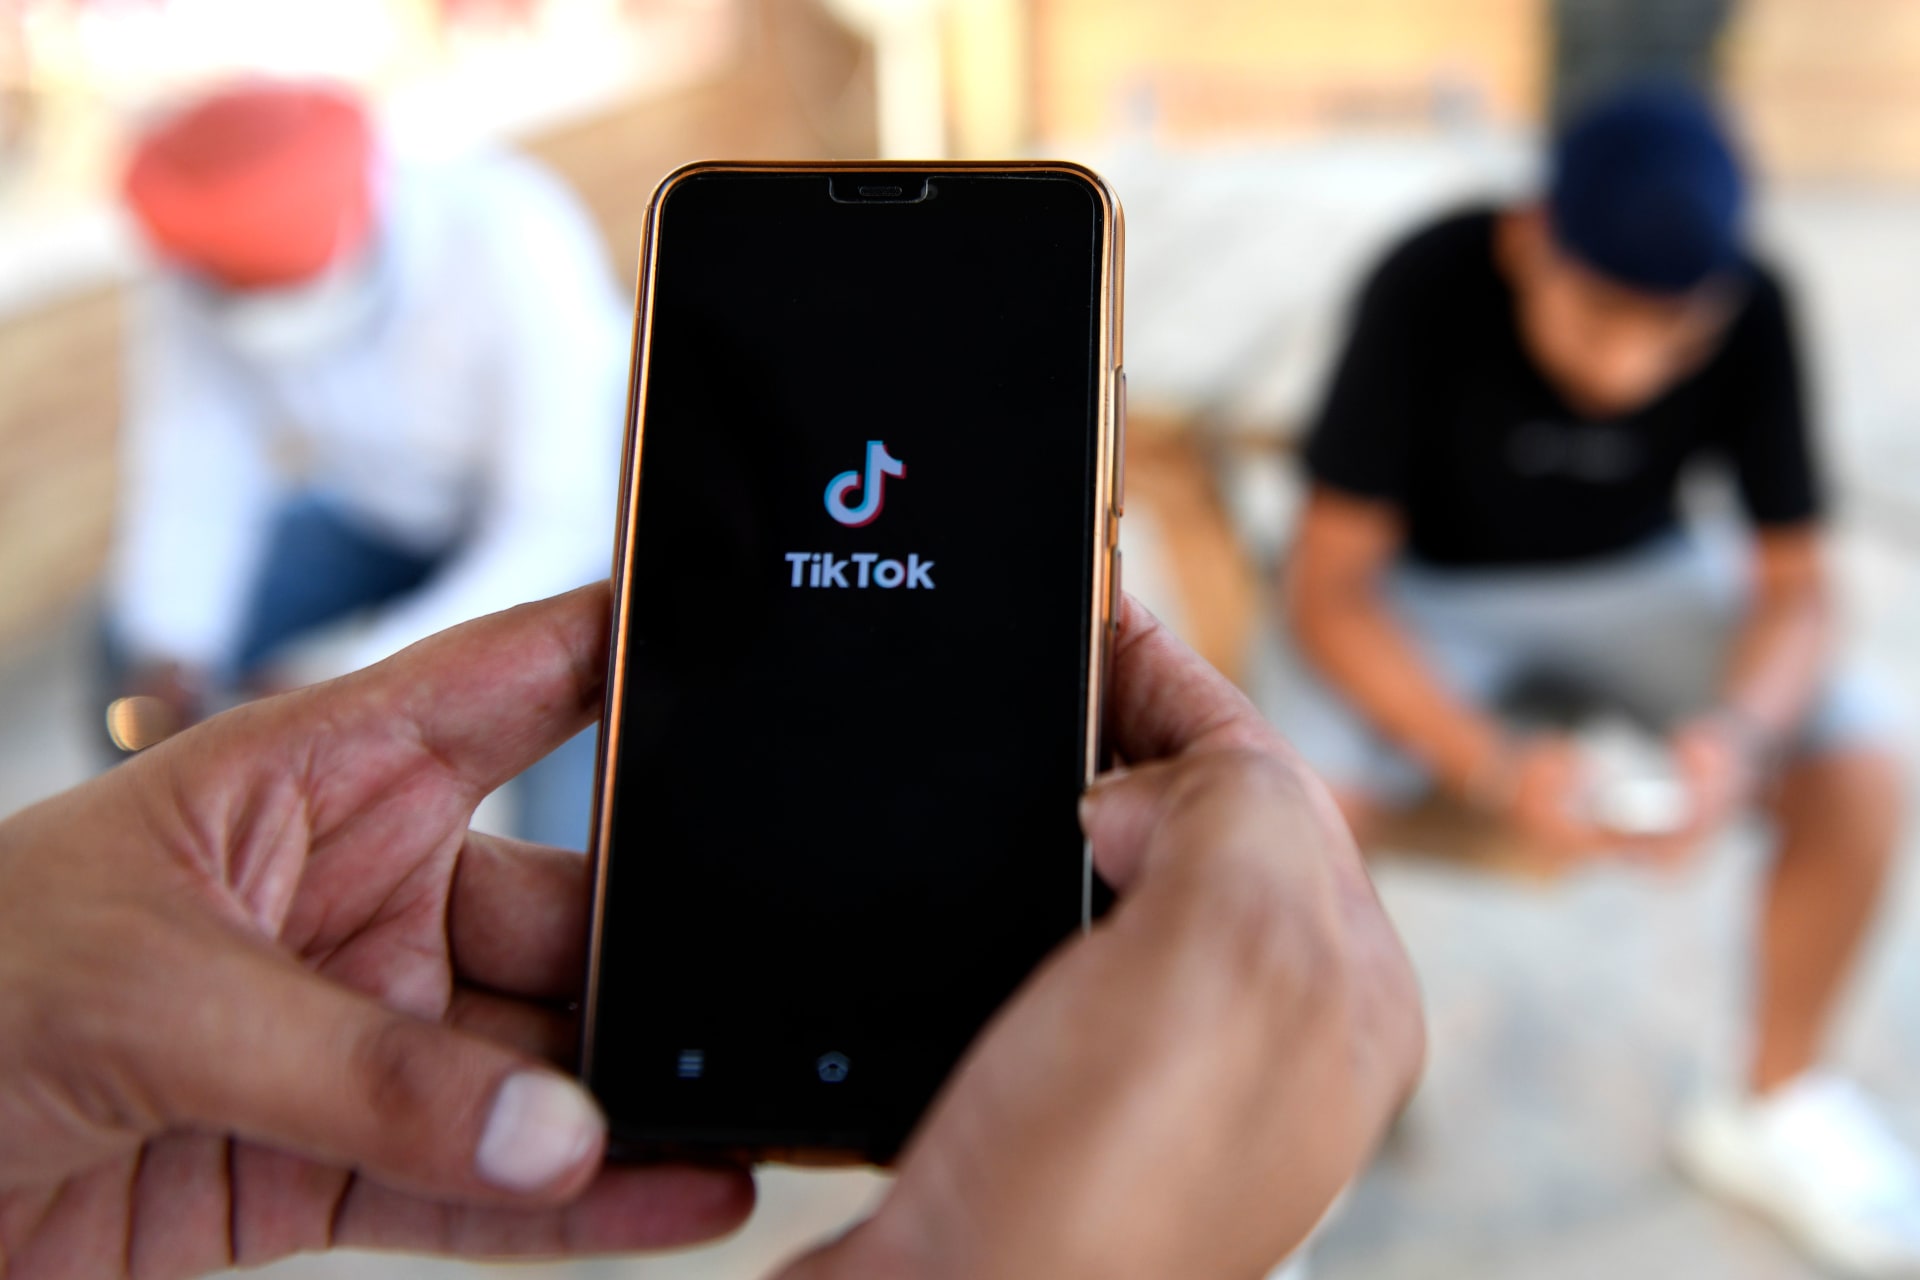 أمازون تطالب موظفيها بإزالة تطبيق Tik Tok من هواتفهم فورًا بسبب "خطورته الأمنية"